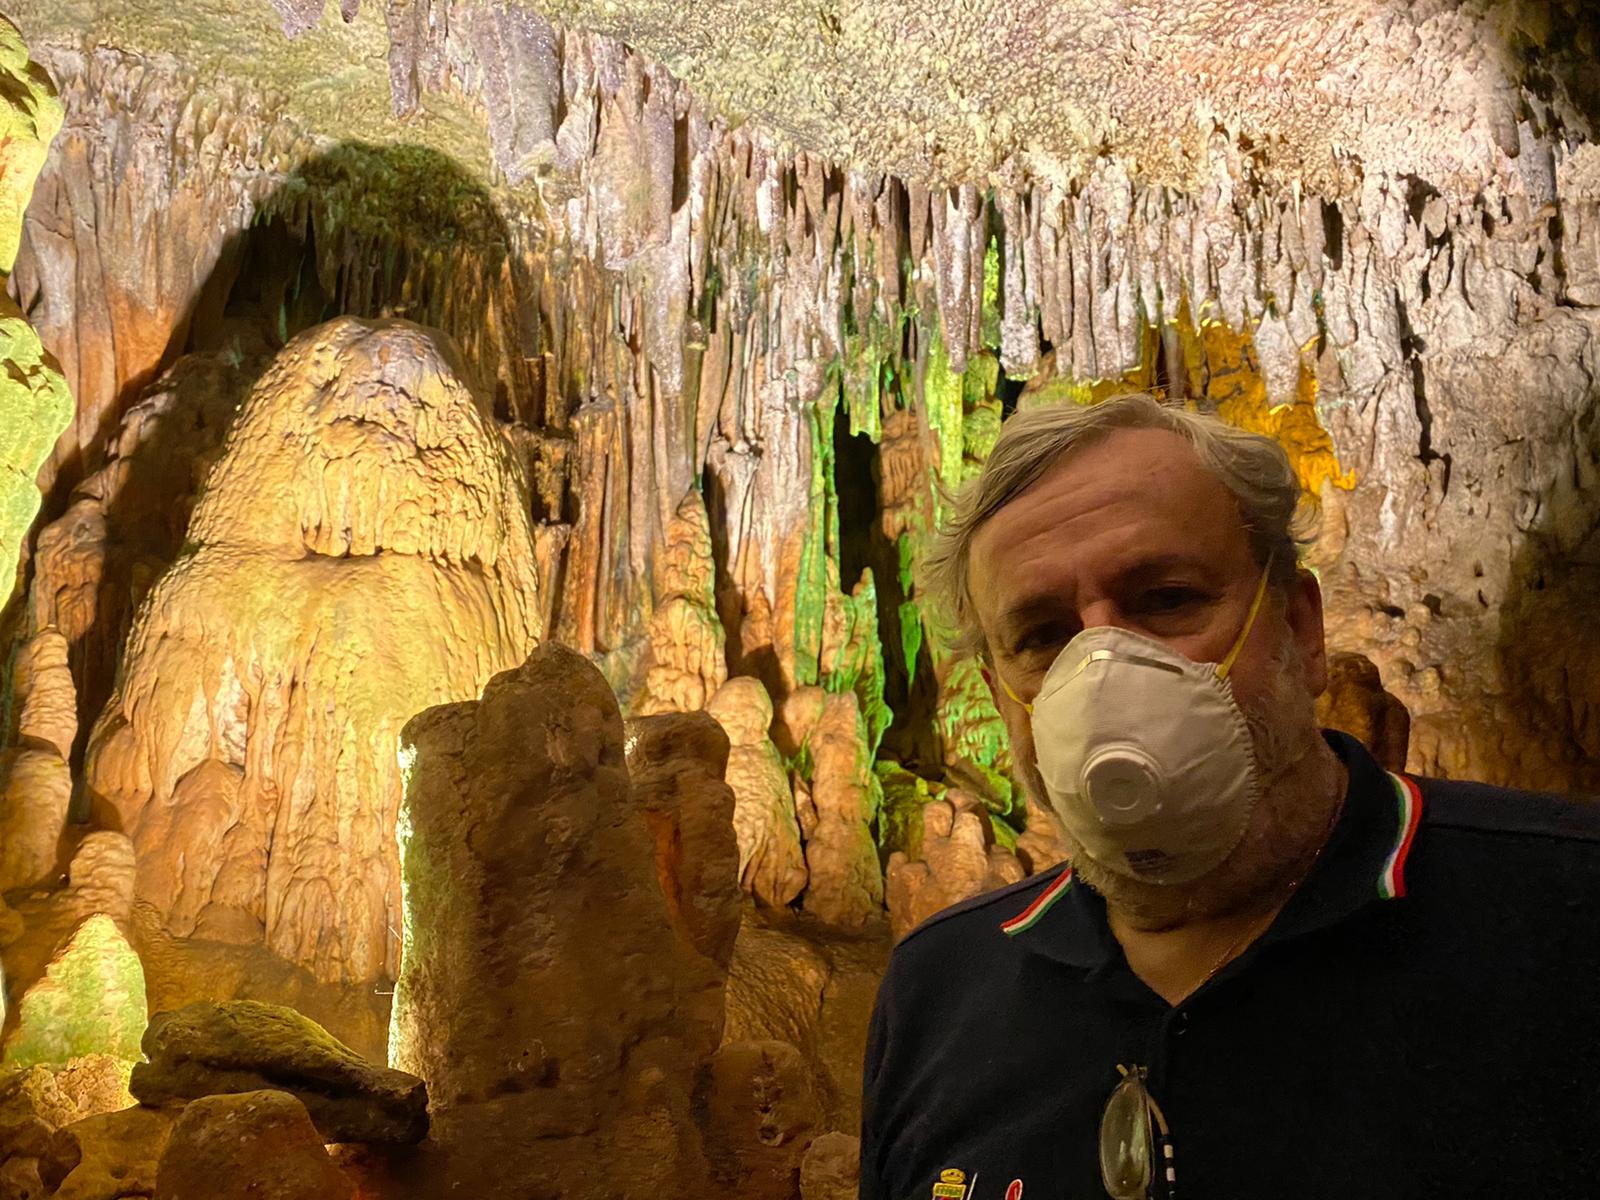 Galleria Emiliano alla riapertura delle Grotte di Castellana: “venite a visitarle, sono uniche al mondo” - Diapositiva 8 di 13